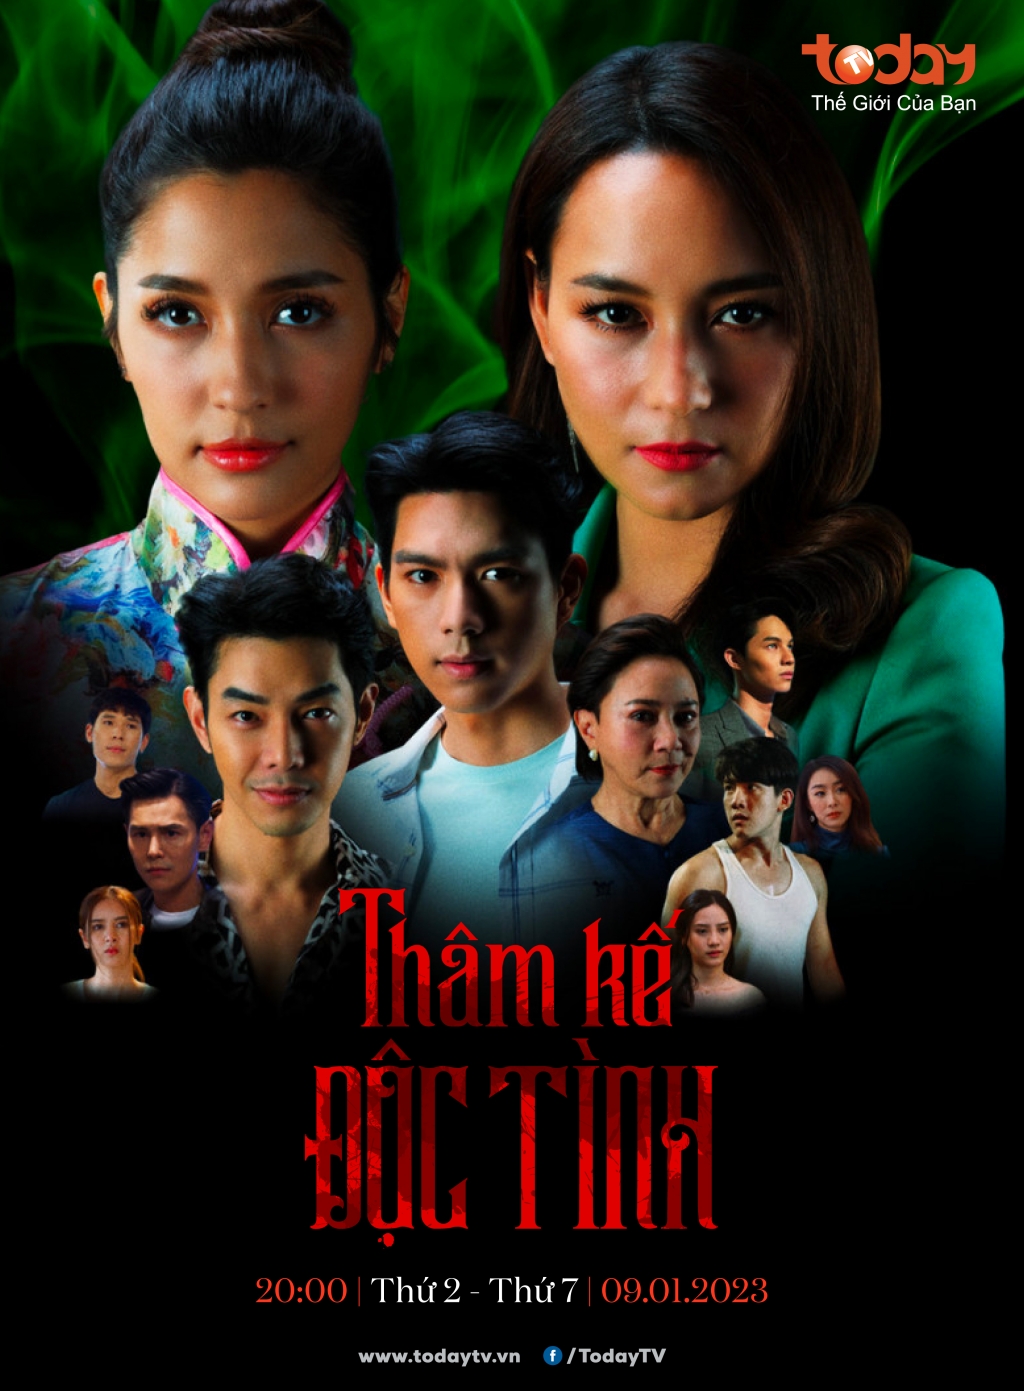 'Thâm kế độc tình': Mãn nhãn với cuộc trả thù hoành tráng bậc nhất truyền hình Thái Lan